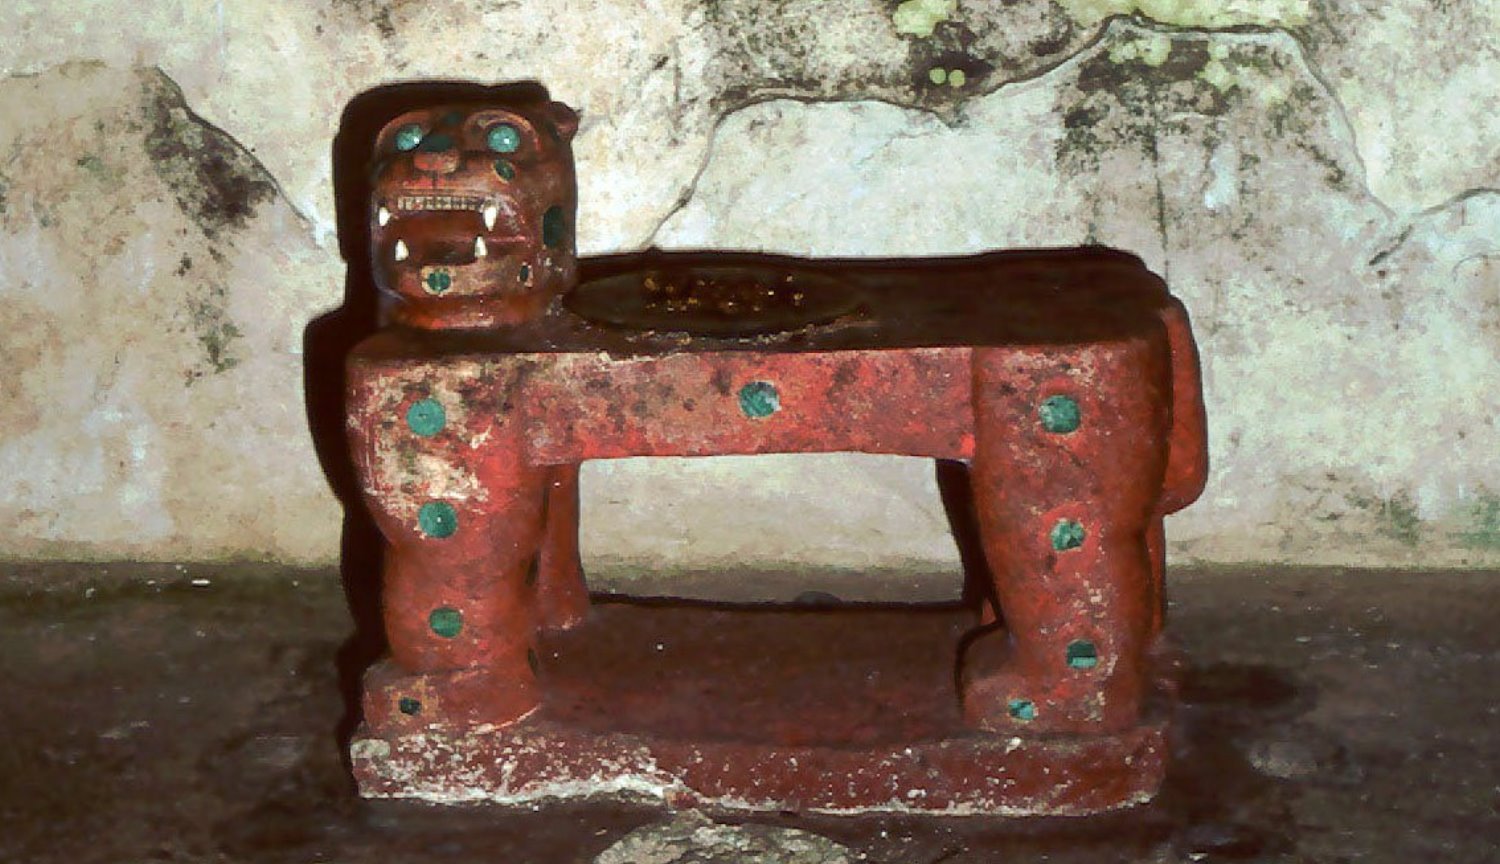 Archeolodzy znaleźli świątynia majów z тысячелетними artefaktów